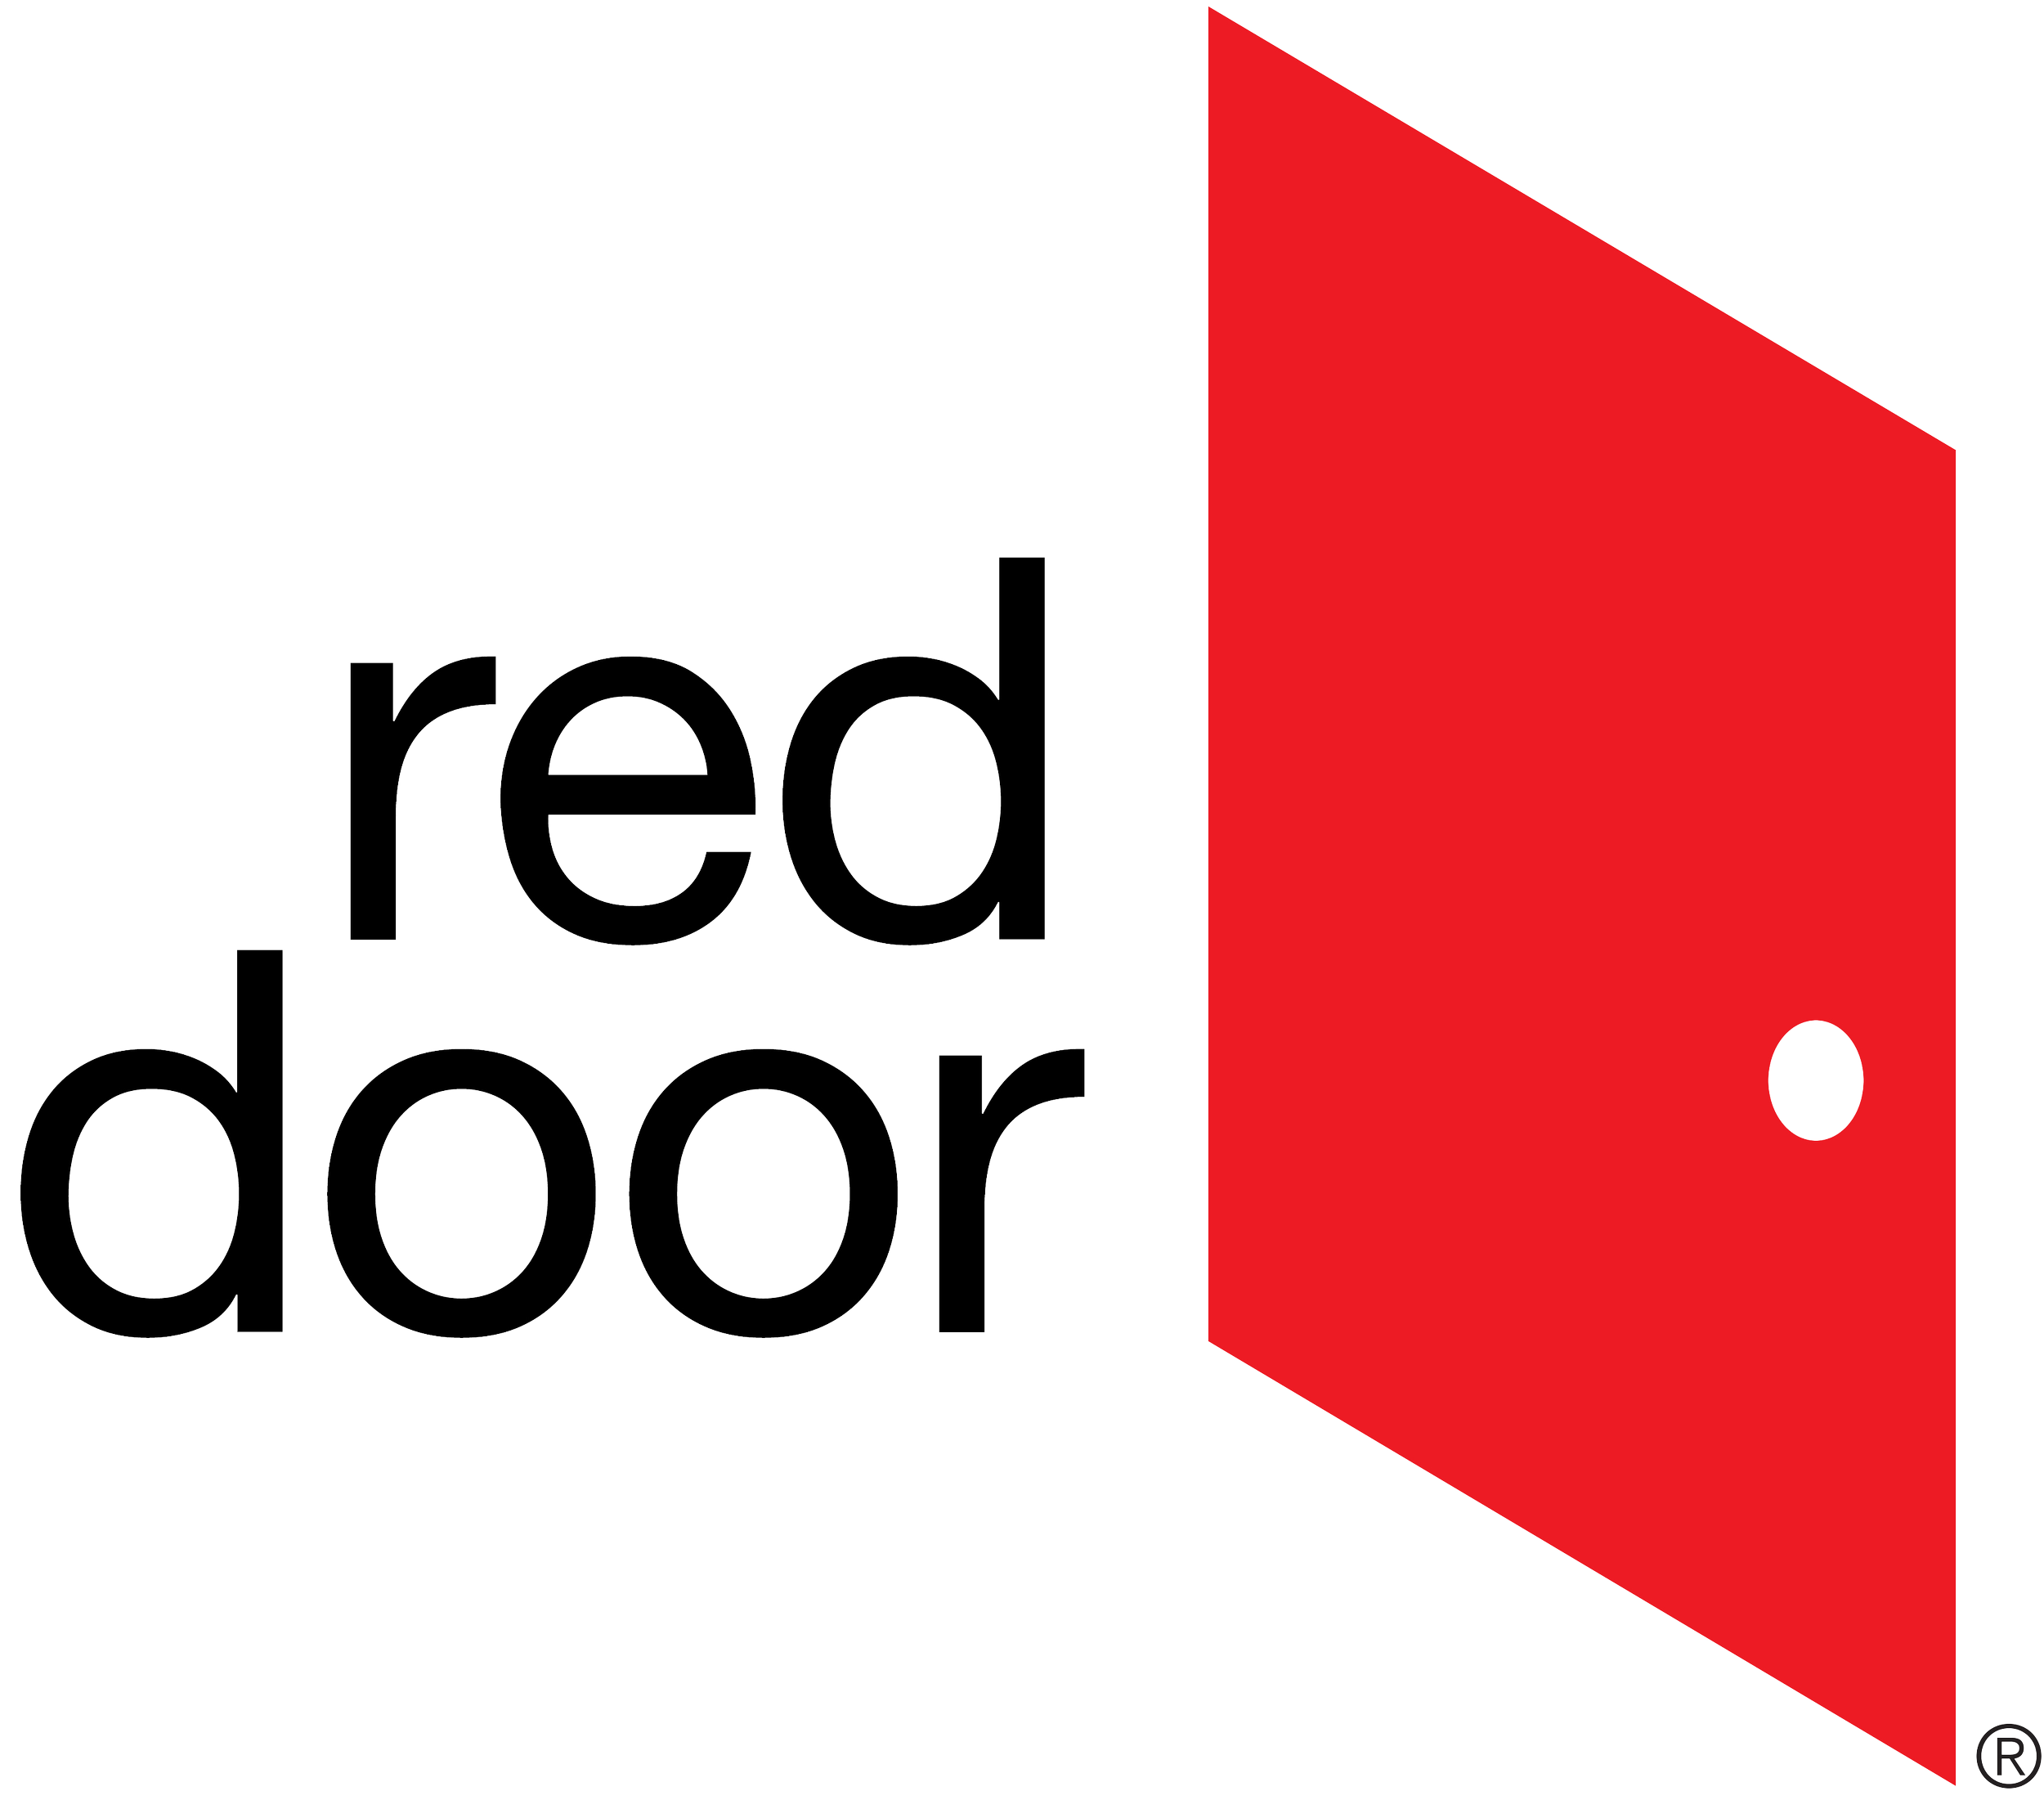 Red Door Design